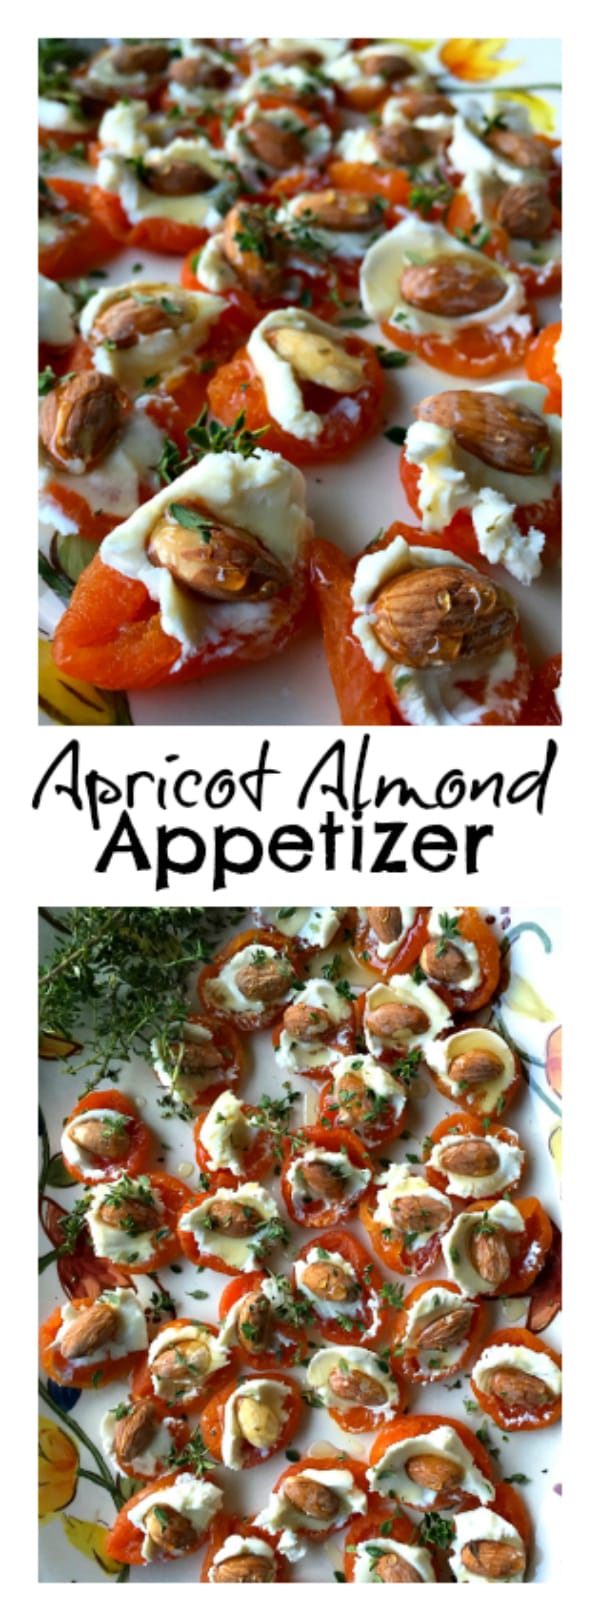 Apricot Almond Appetizer